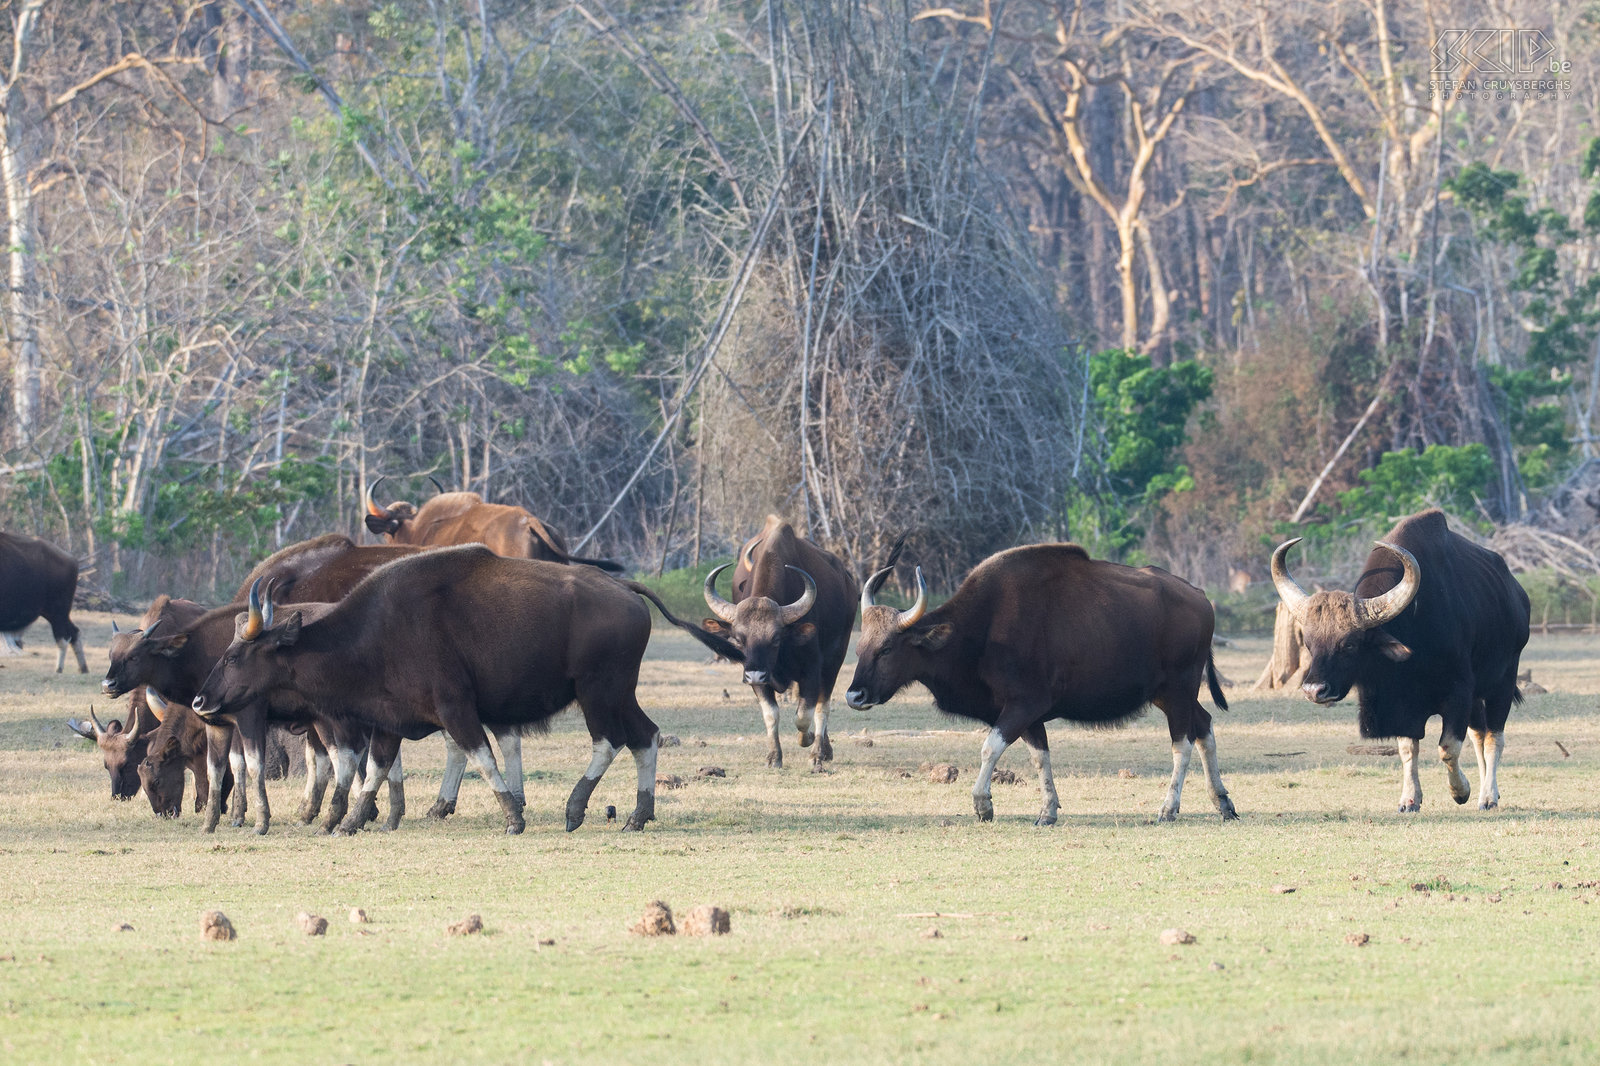 Kabini - Gaurs Op de rivieroever kwamen we ook een grote kudde gaurs tegen. De gaur (Bos gaurus), soms ook wel de Indische bison genoemd, is het grootste rund van Azië.  Stefan Cruysberghs